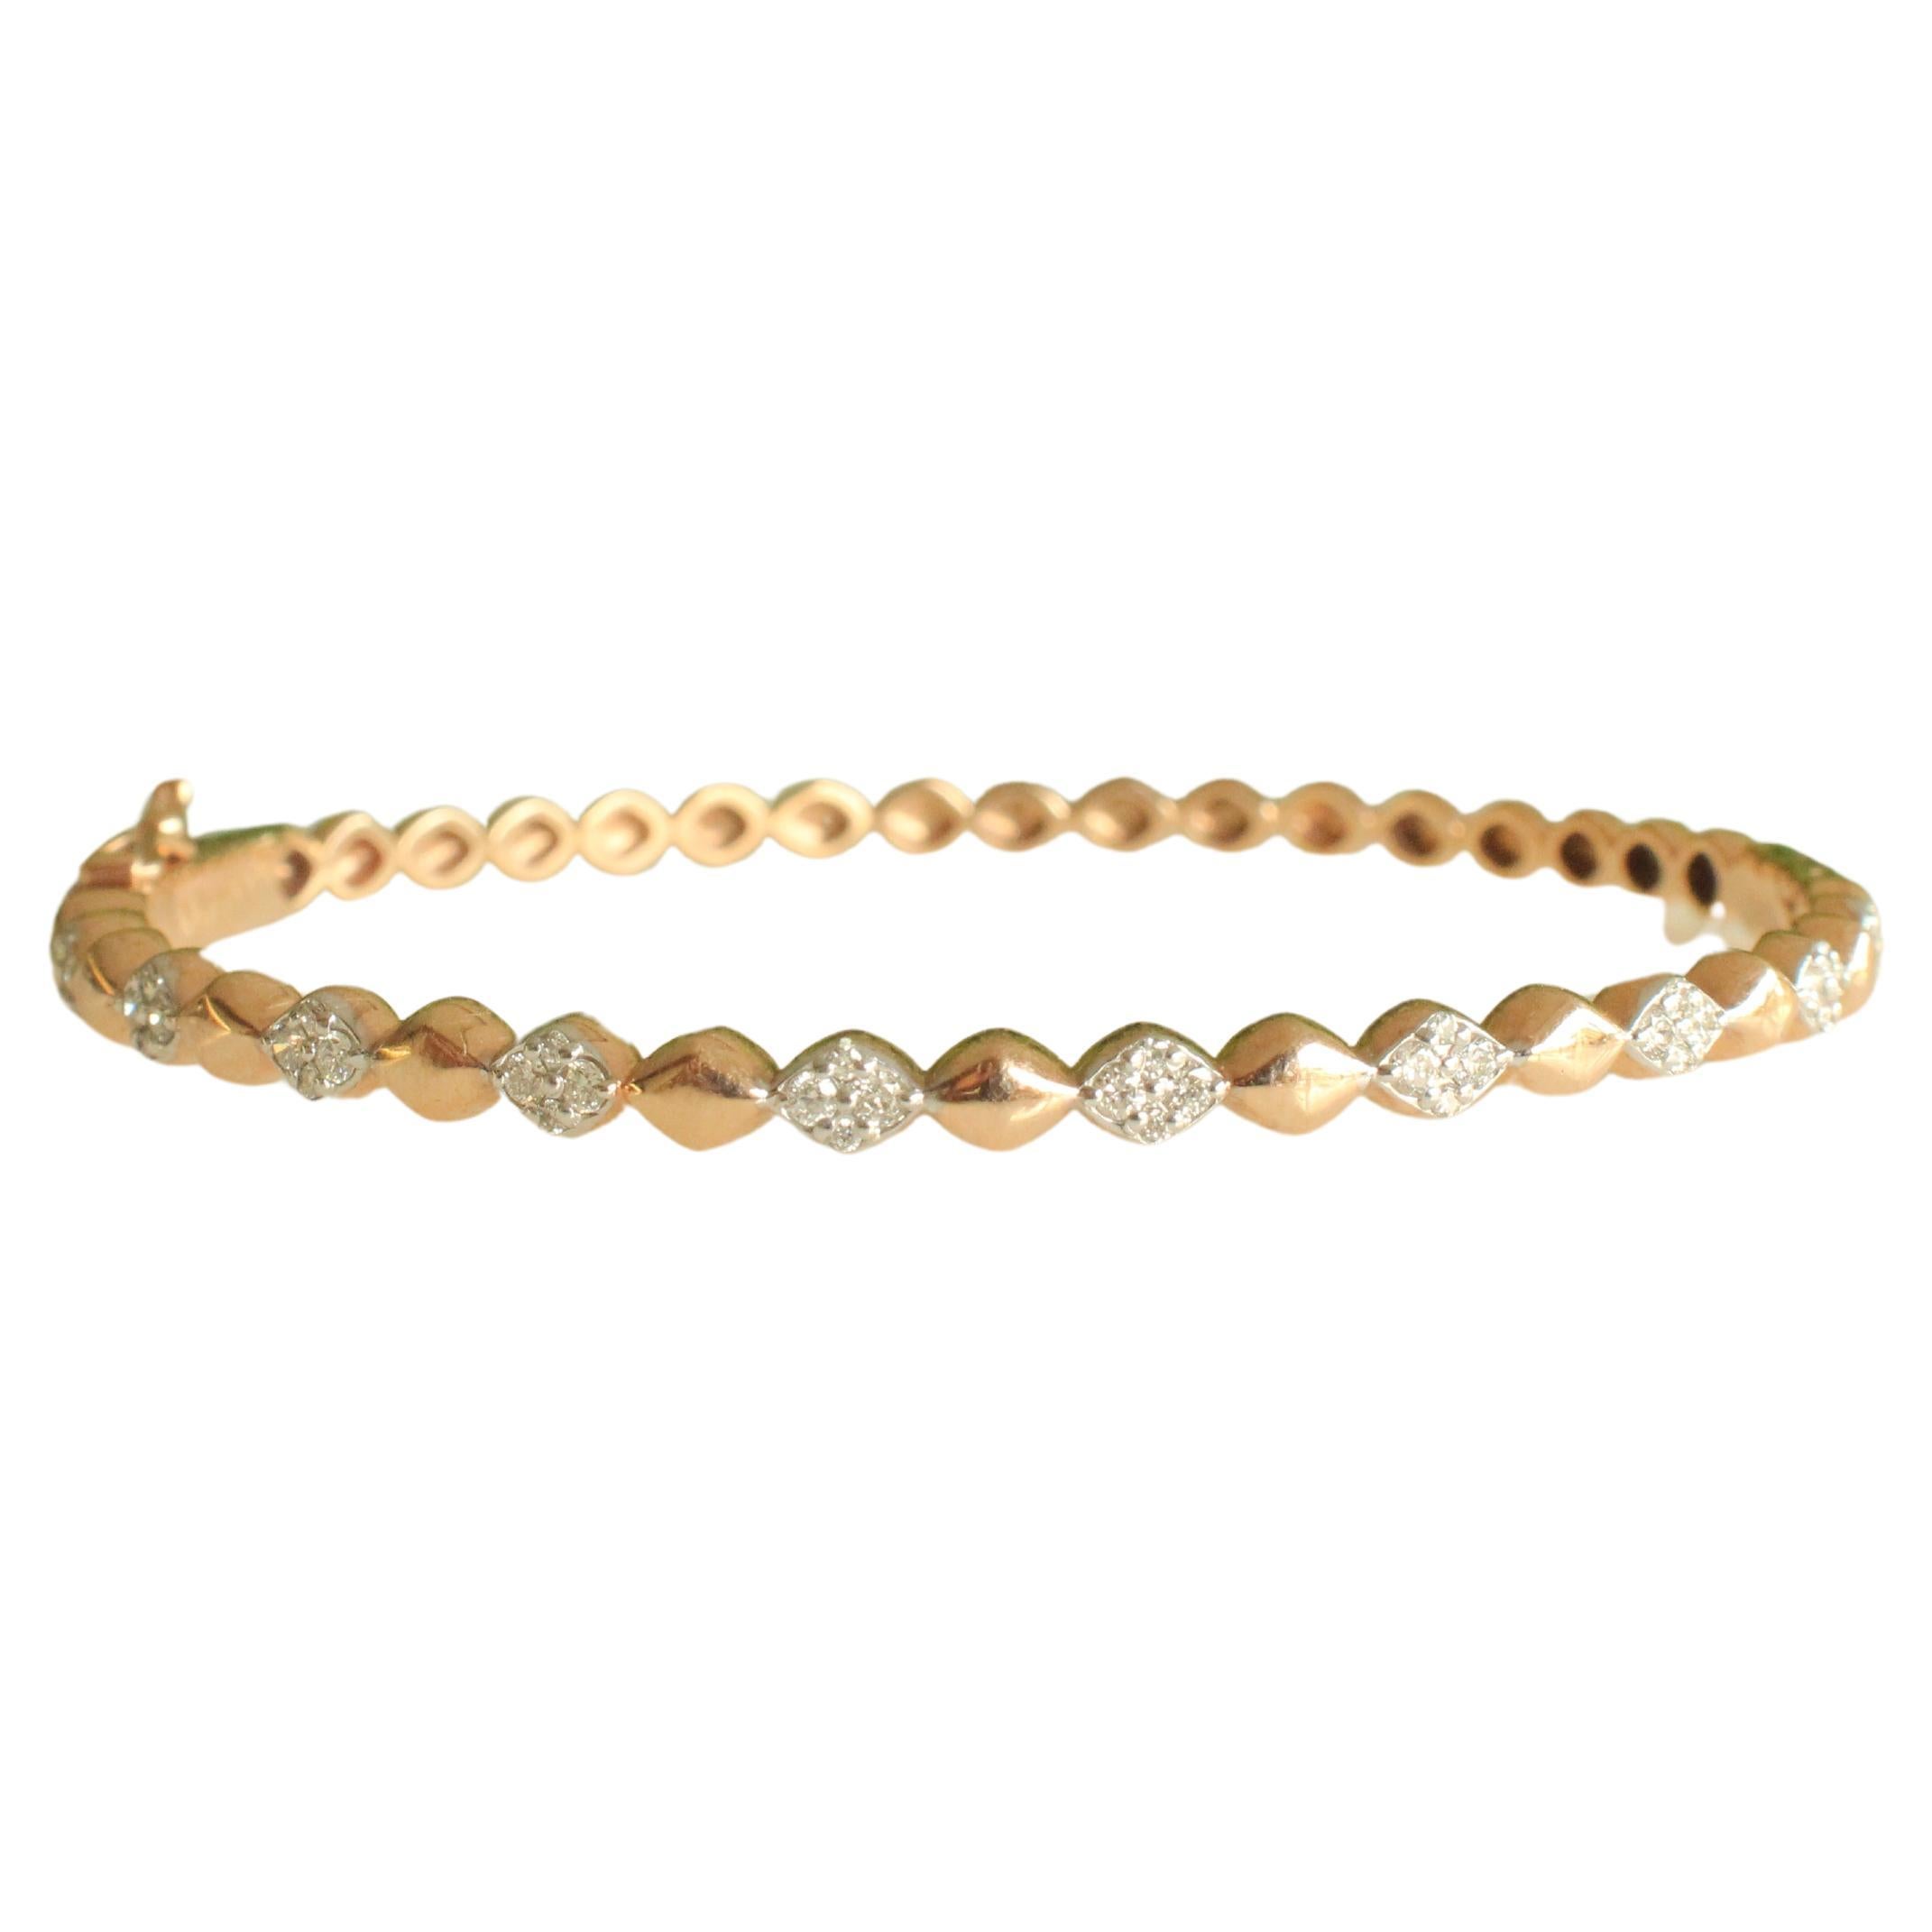 Drop bubble design bangle bracelet set in 18k Solid Gold